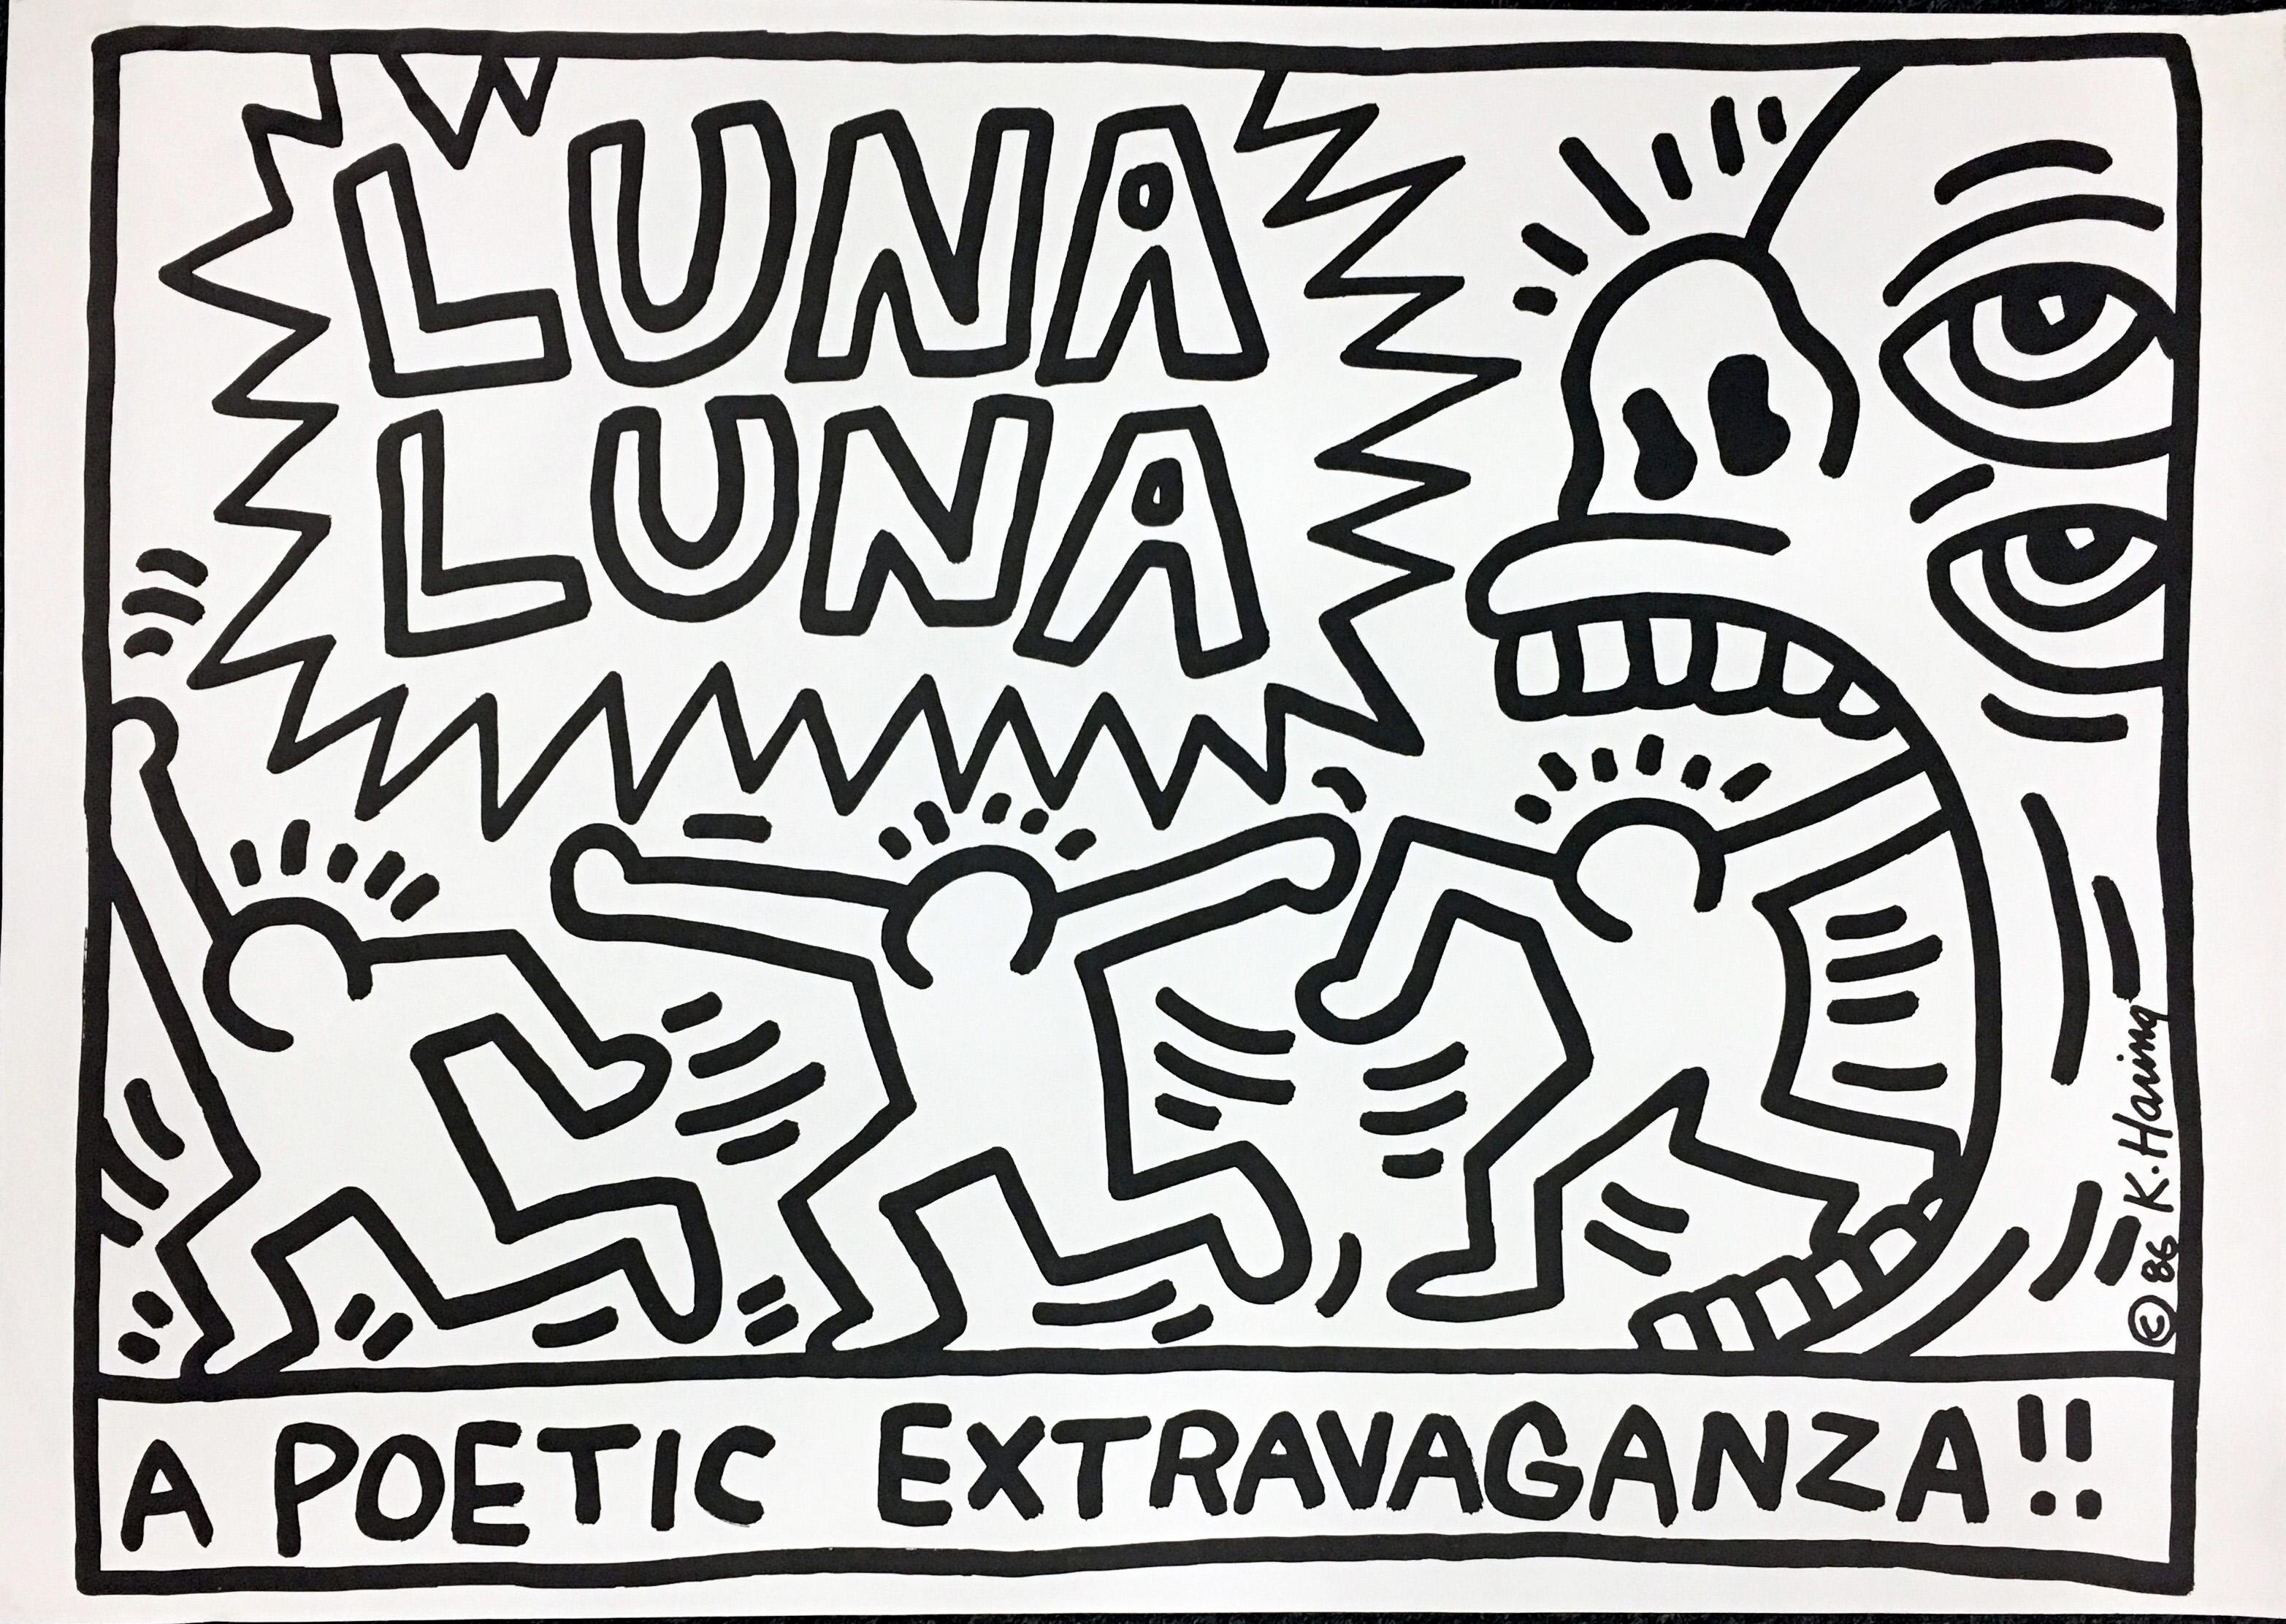 keith haring luna luna poster